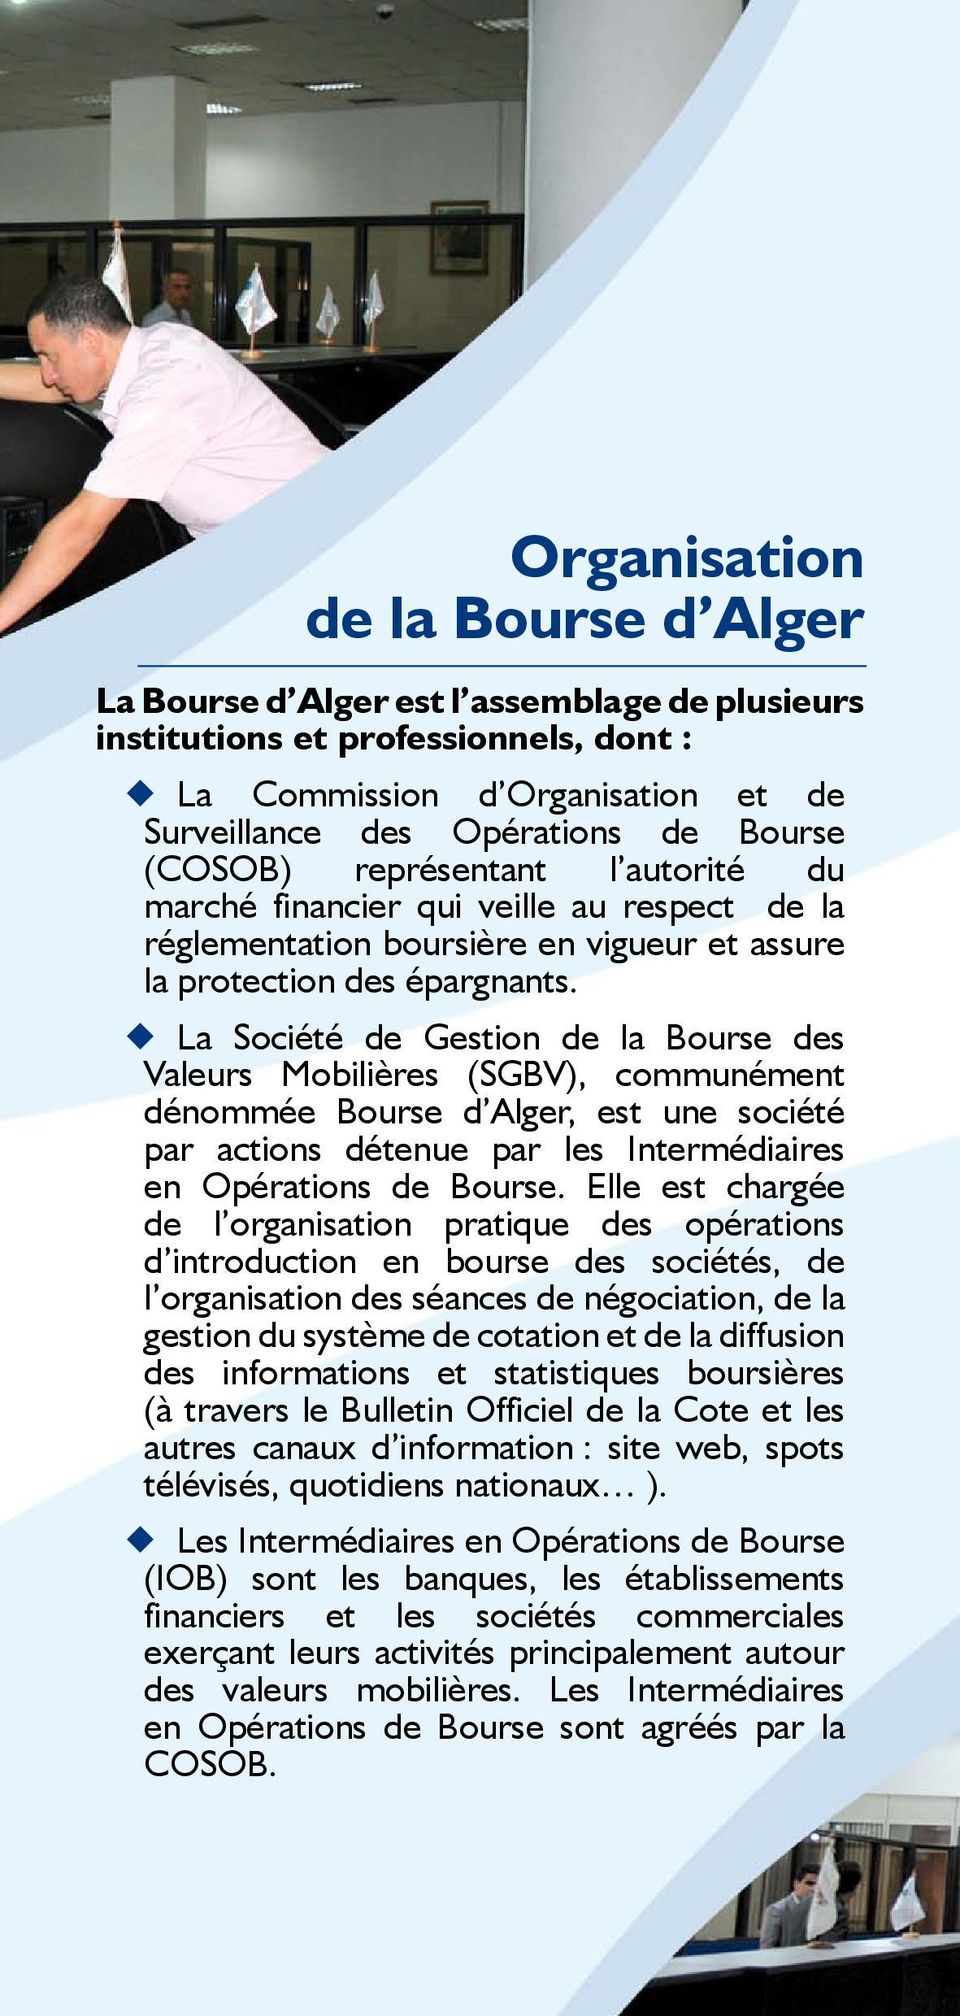 La Société de Gestion de la Bourse des Valeurs Mobilières (SGBV), communément dénommée Bourse d Alger, est une société par actions détenue par les Intermédiaires en Opérations de Bourse.